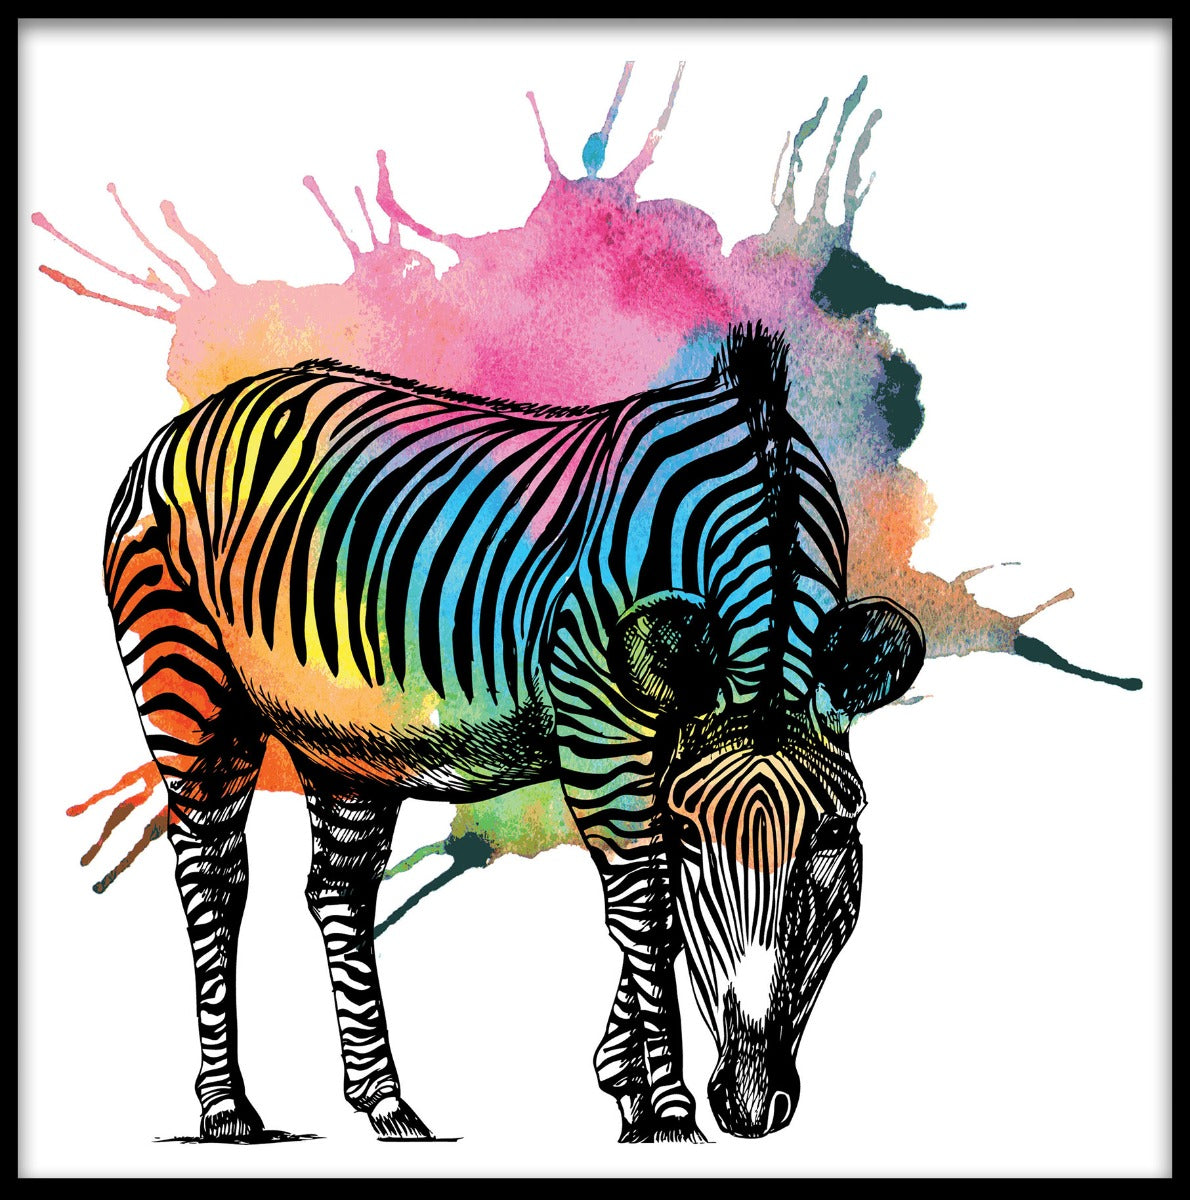  Zebra kleurrijke abstracte poster